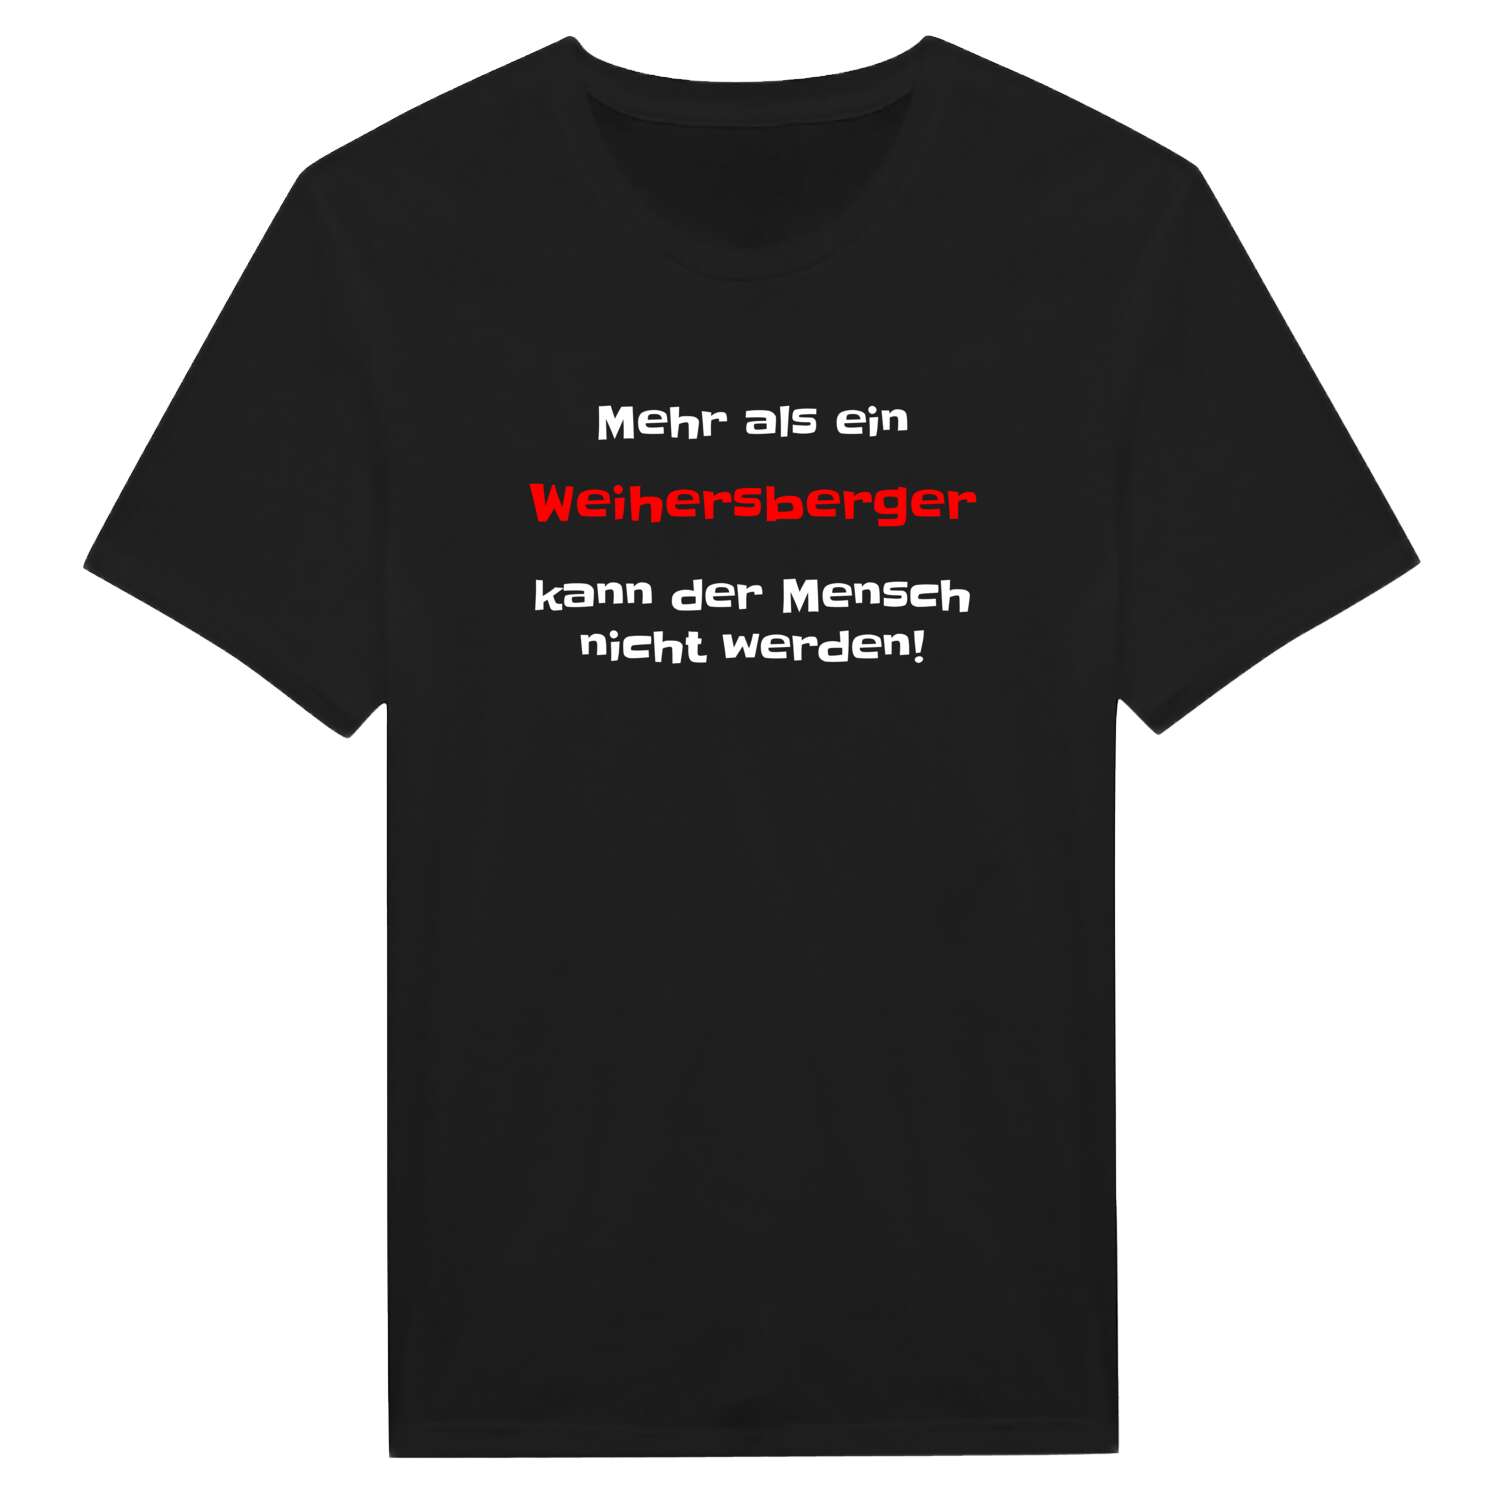 Weihersberg T-Shirt »Mehr als ein«